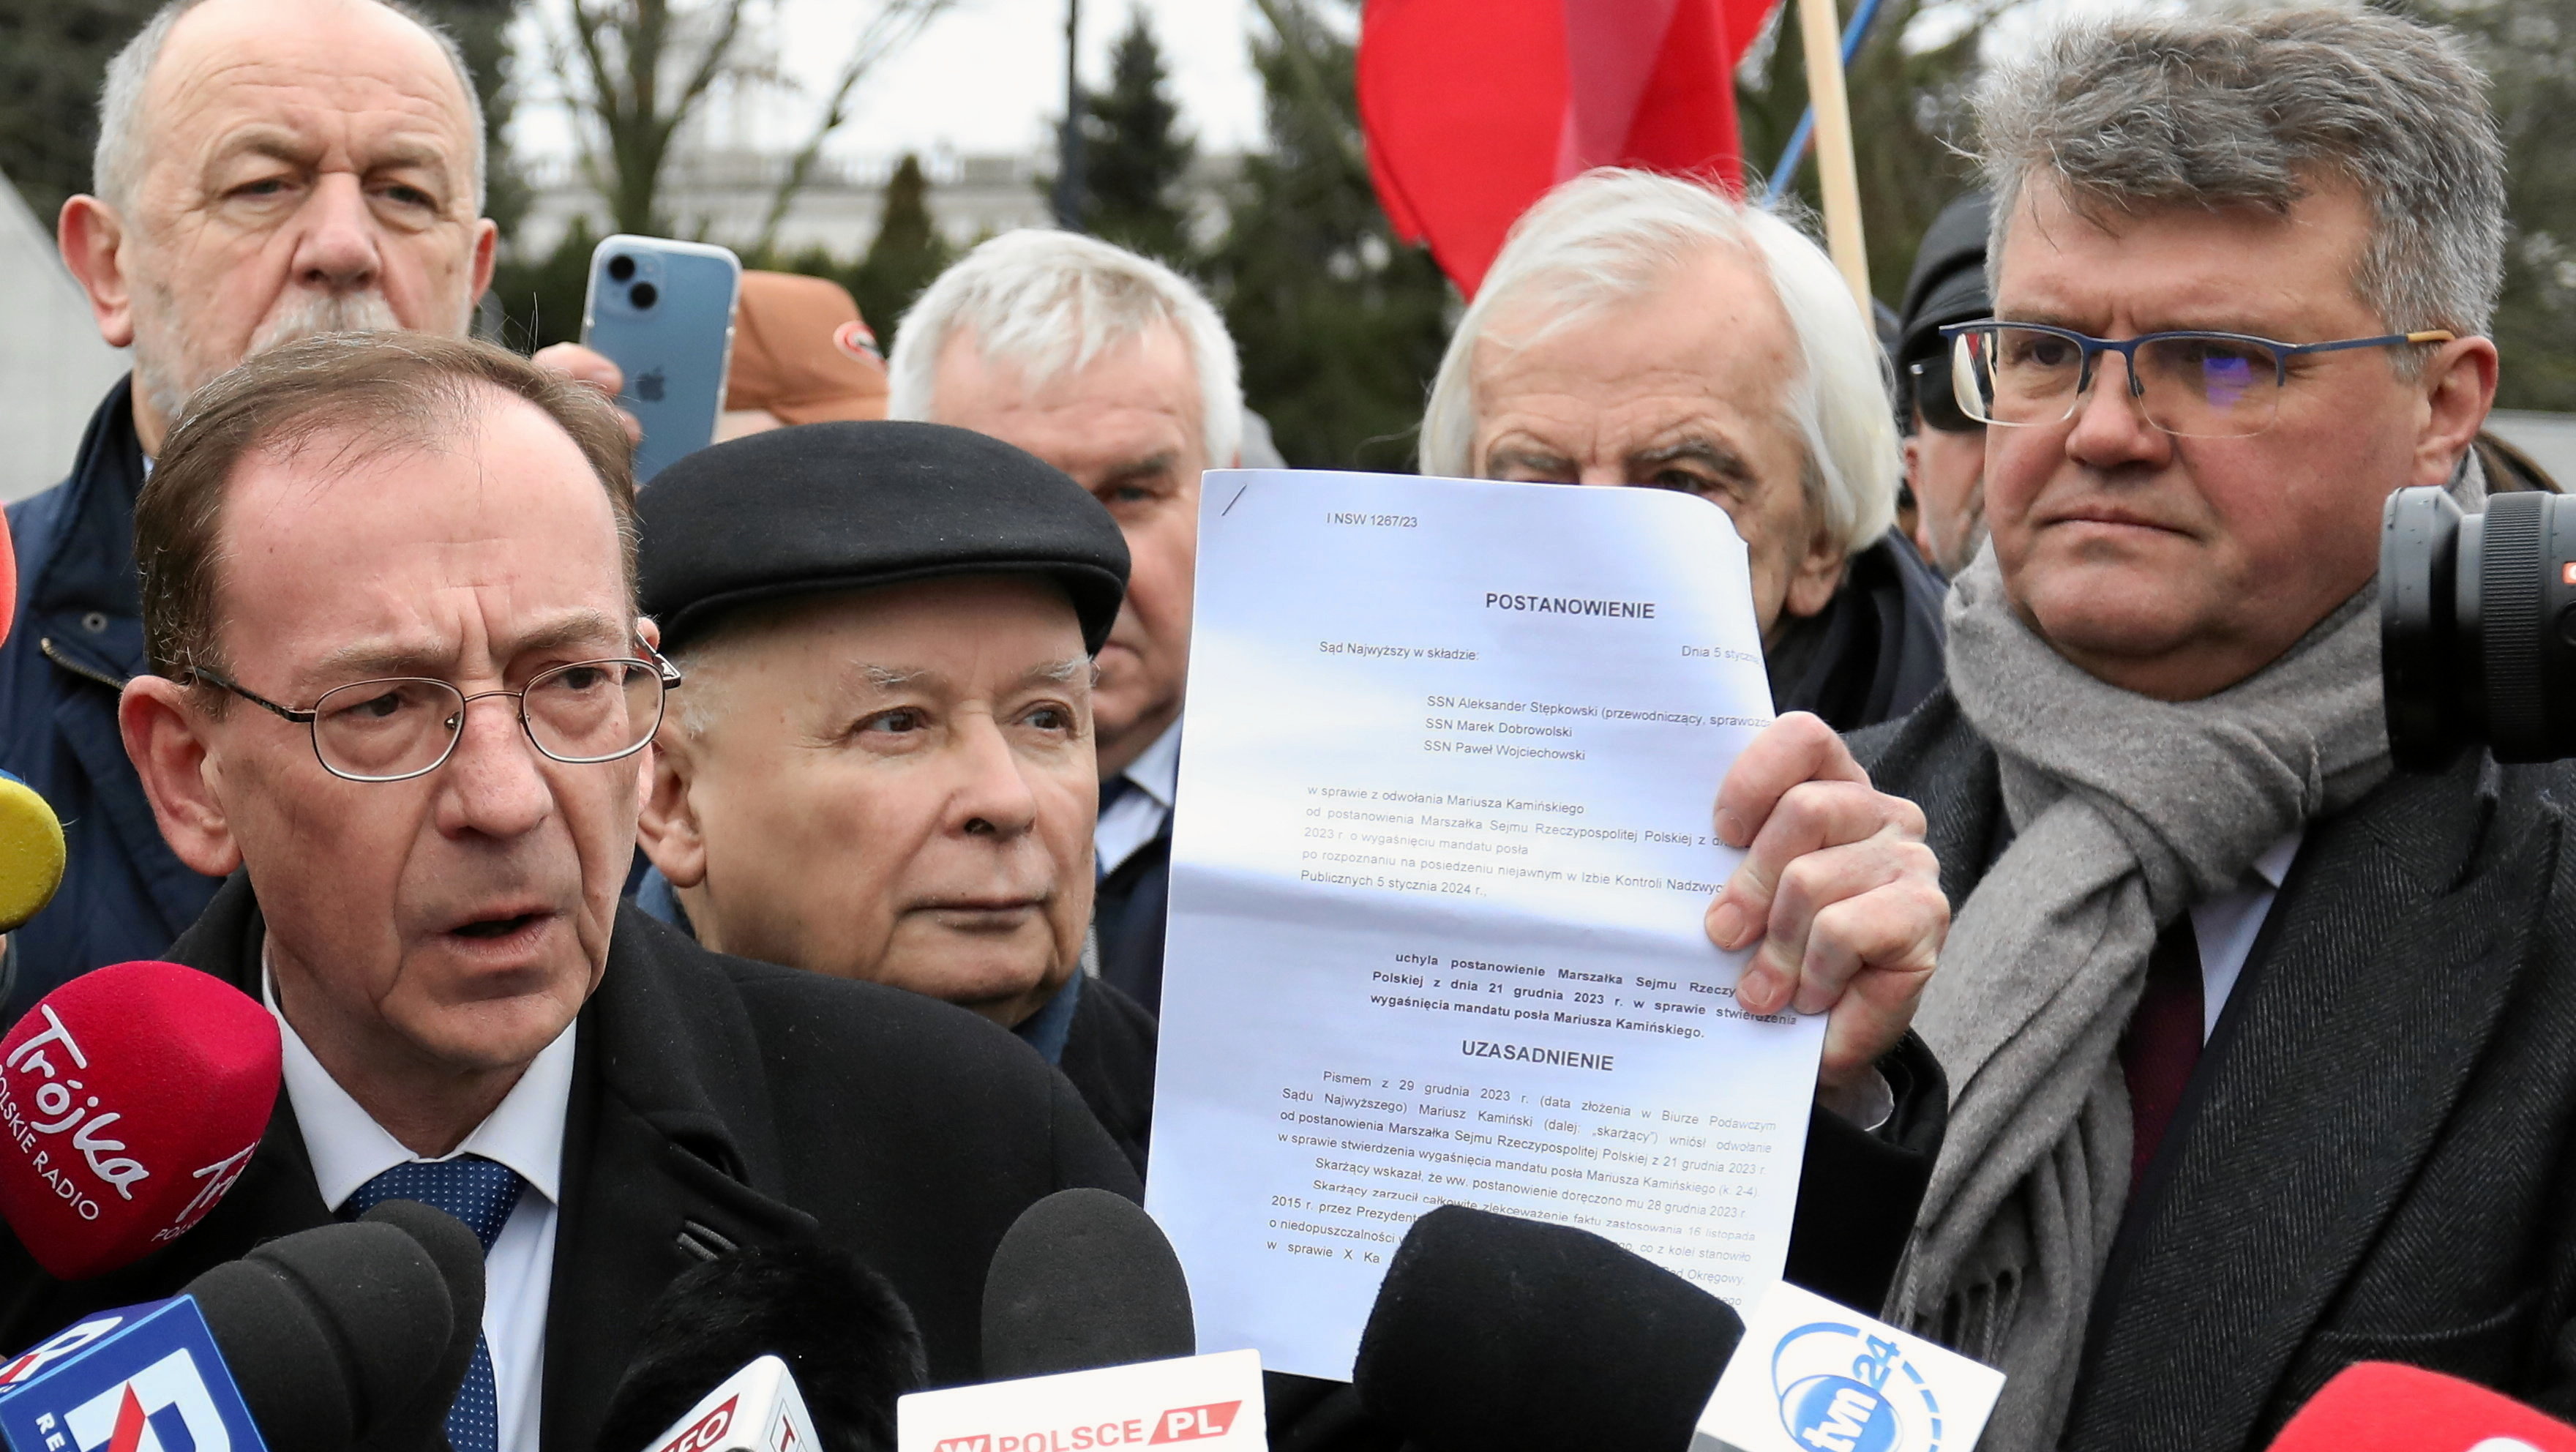 kaczyński miał pojawić się na konferencji kamińskiego i wąsika. ale nie przyszedł. gdzie jest prezes?